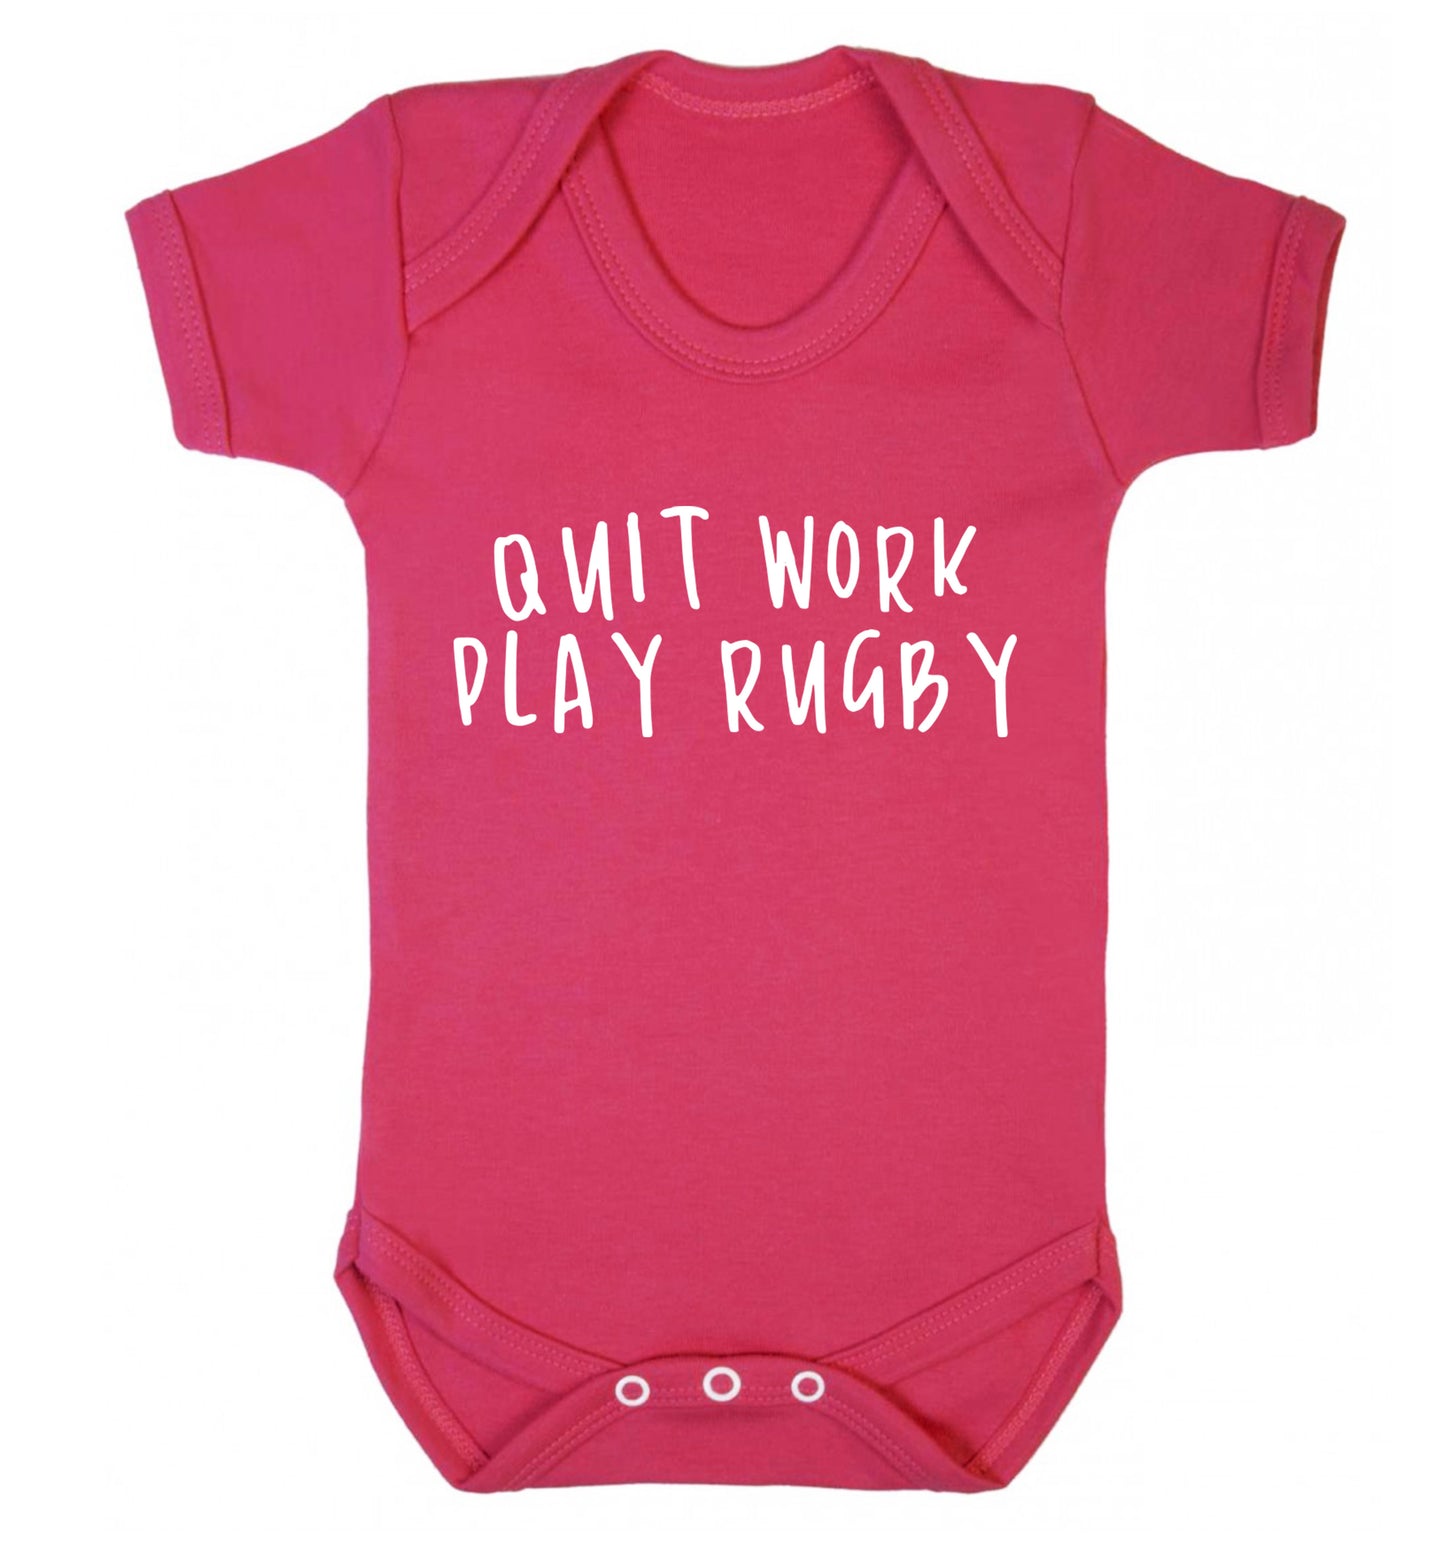 Quit work play rugby Baby Vest dark pink 18-24 months